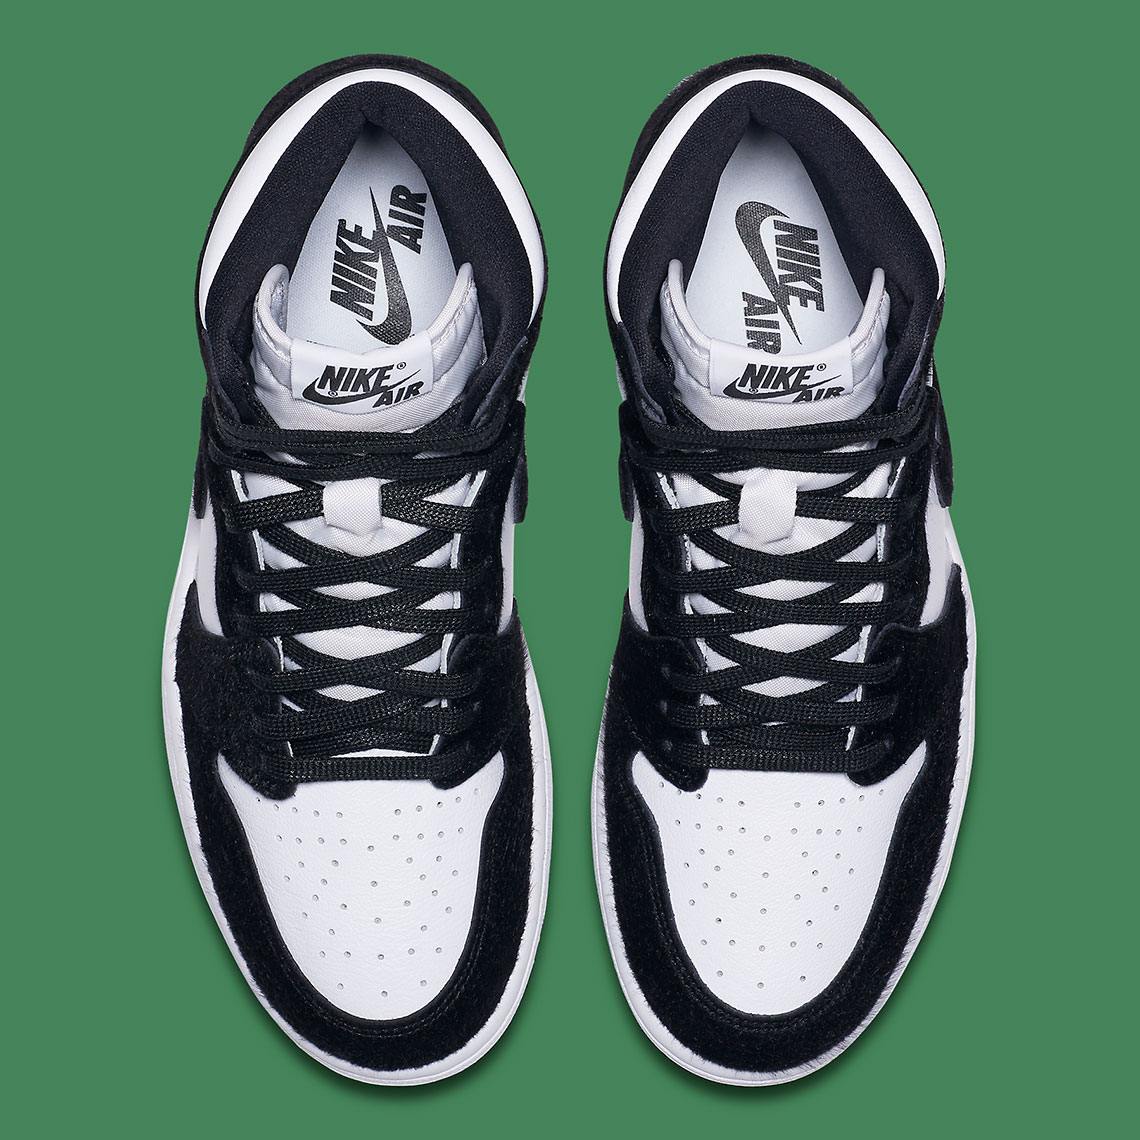 Where To Buy Air Jordan 1 Retro High Og Black White Sneakernews Com